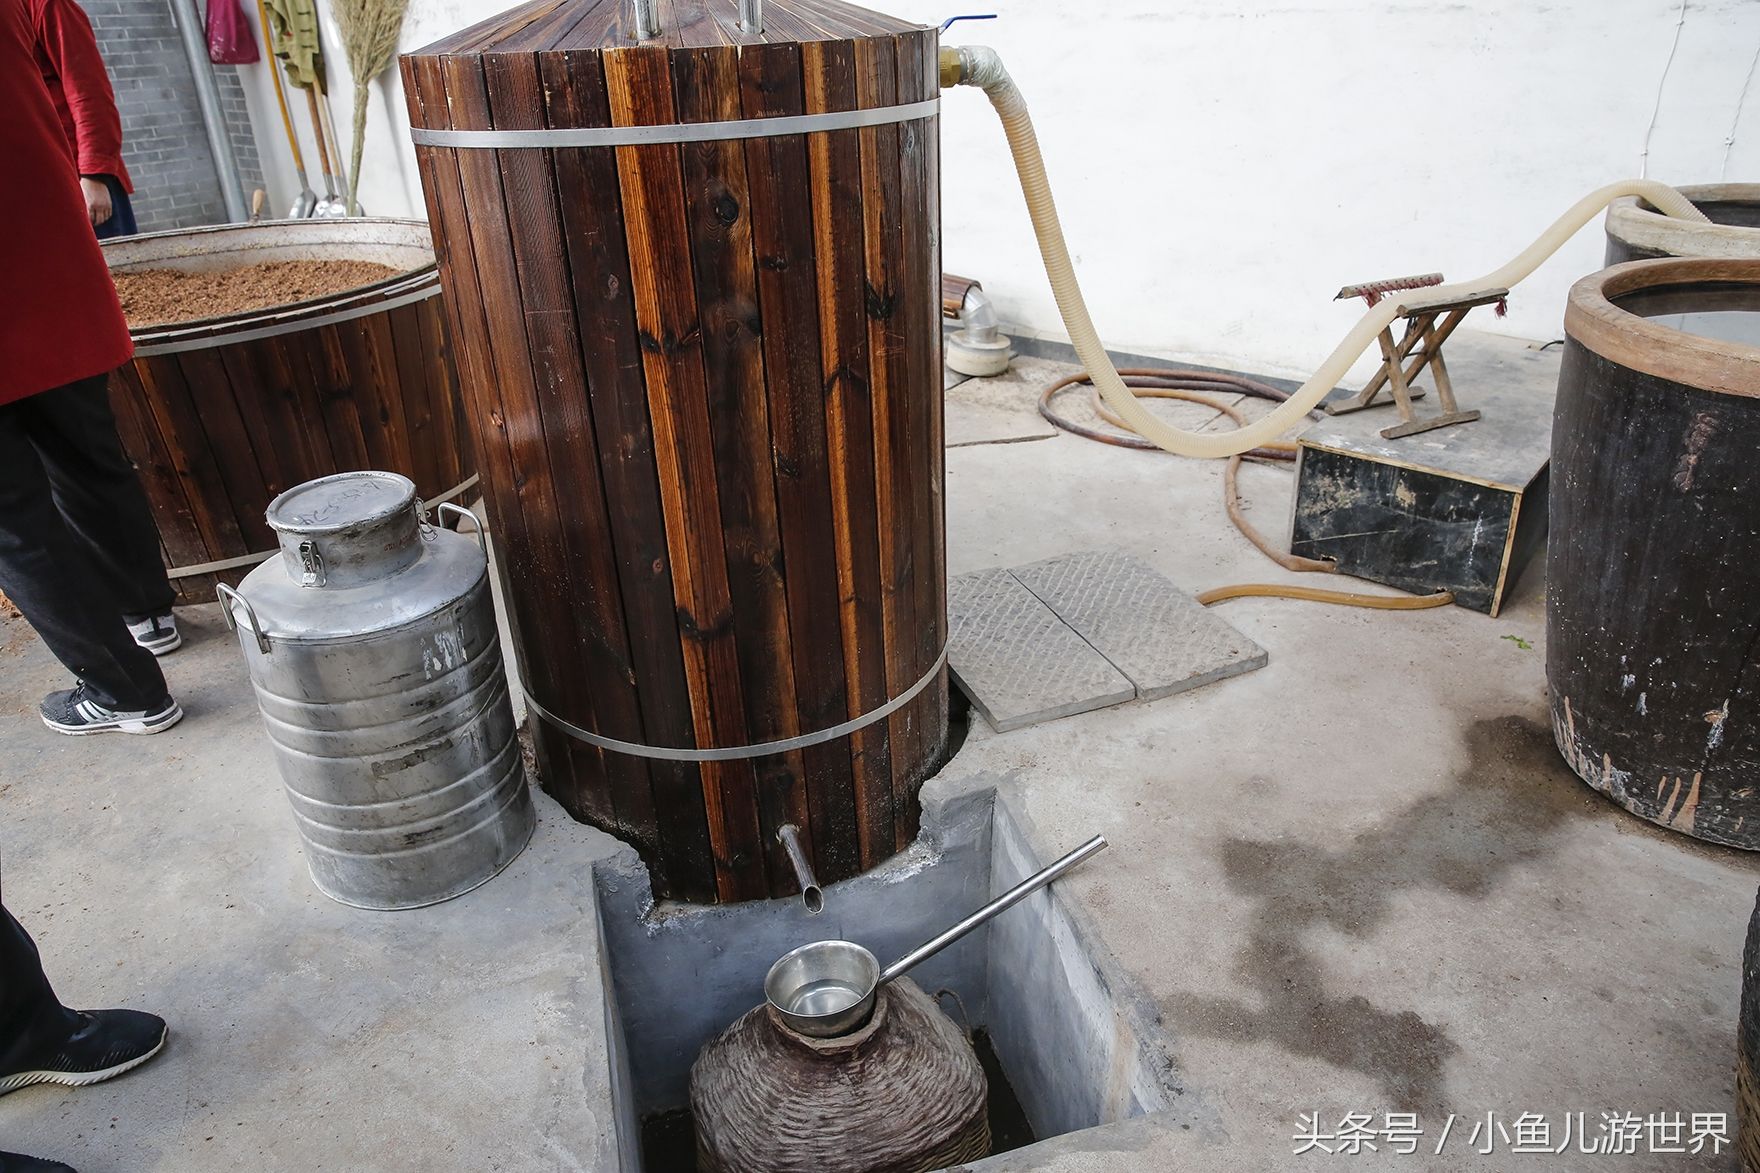 农村景区里的传统手艺酿高度粮食酒,699元一斤